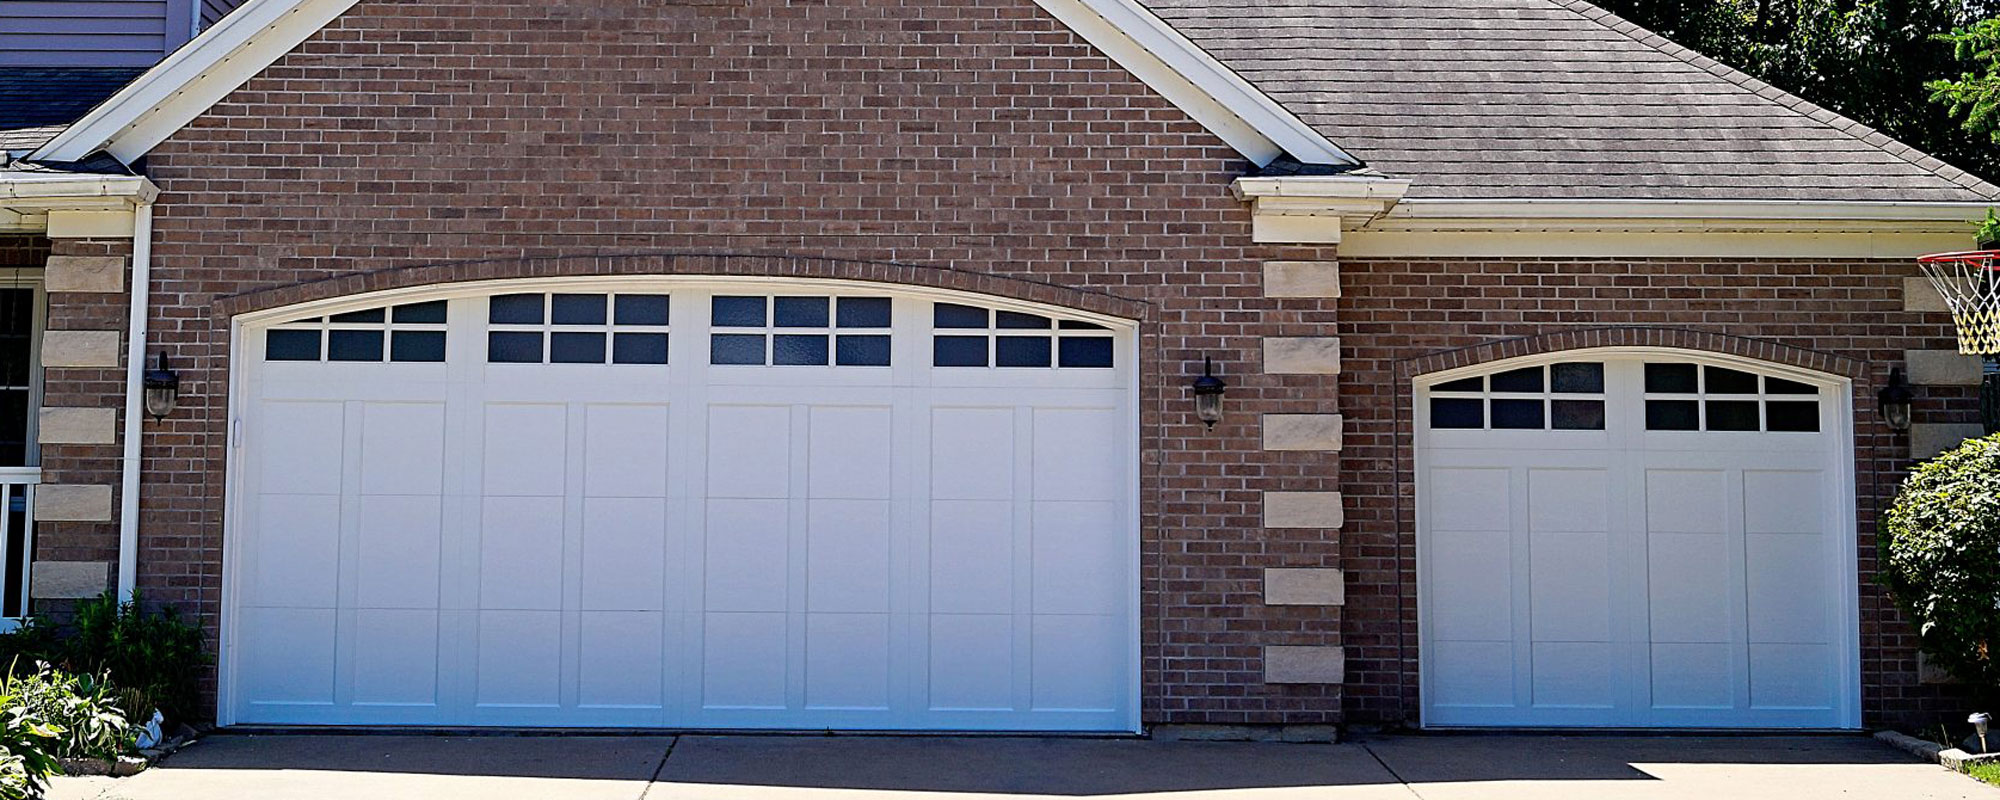 Residential Garage Doors Barron Equipment Overhead Doors